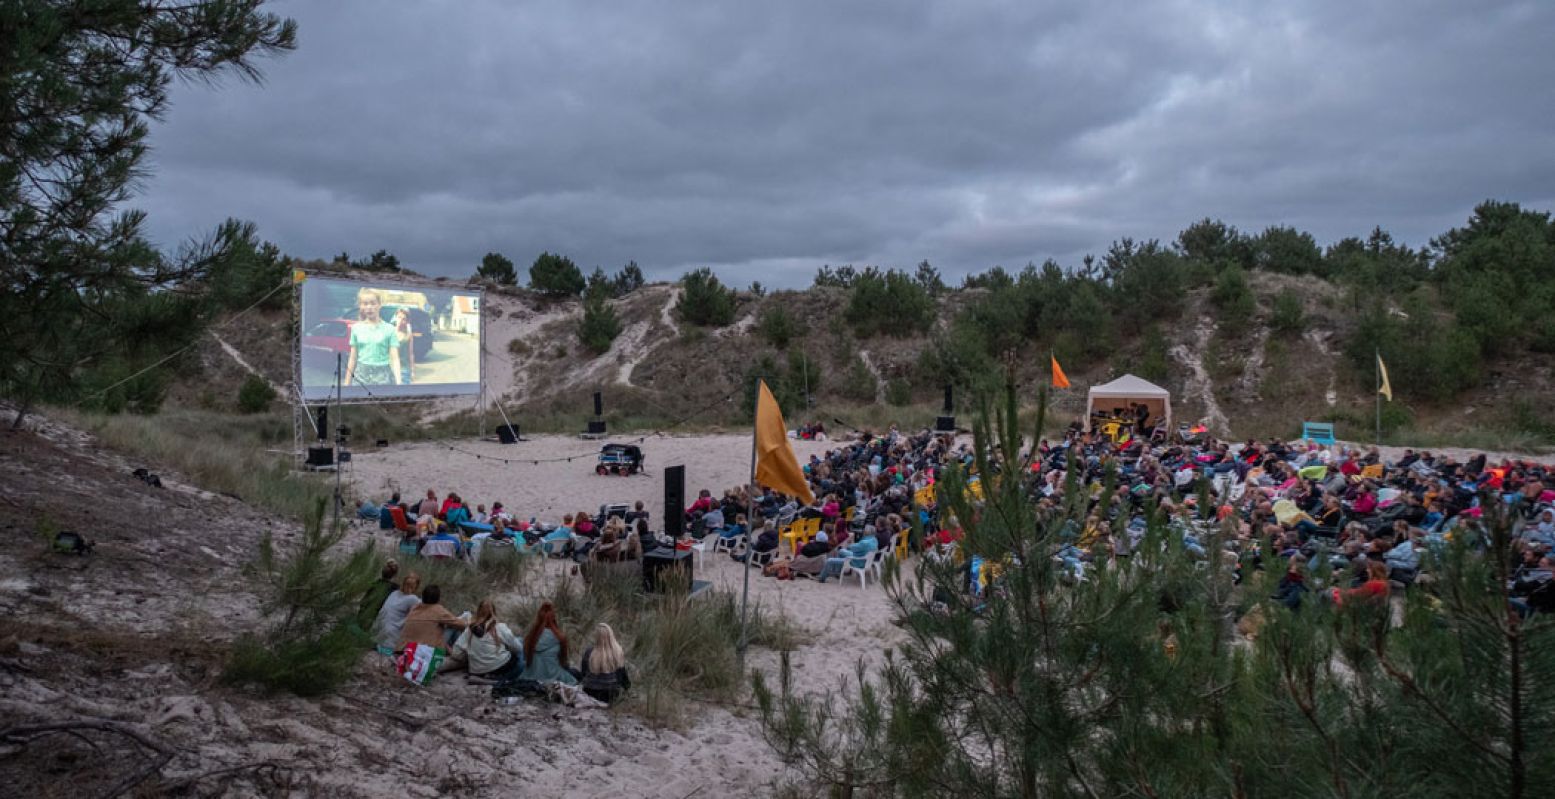 Film kijken tussen de duinen, het kan in augustus op Terschelling. Foto: Terschelling Openlucht Filmfestival © Laura Conijn